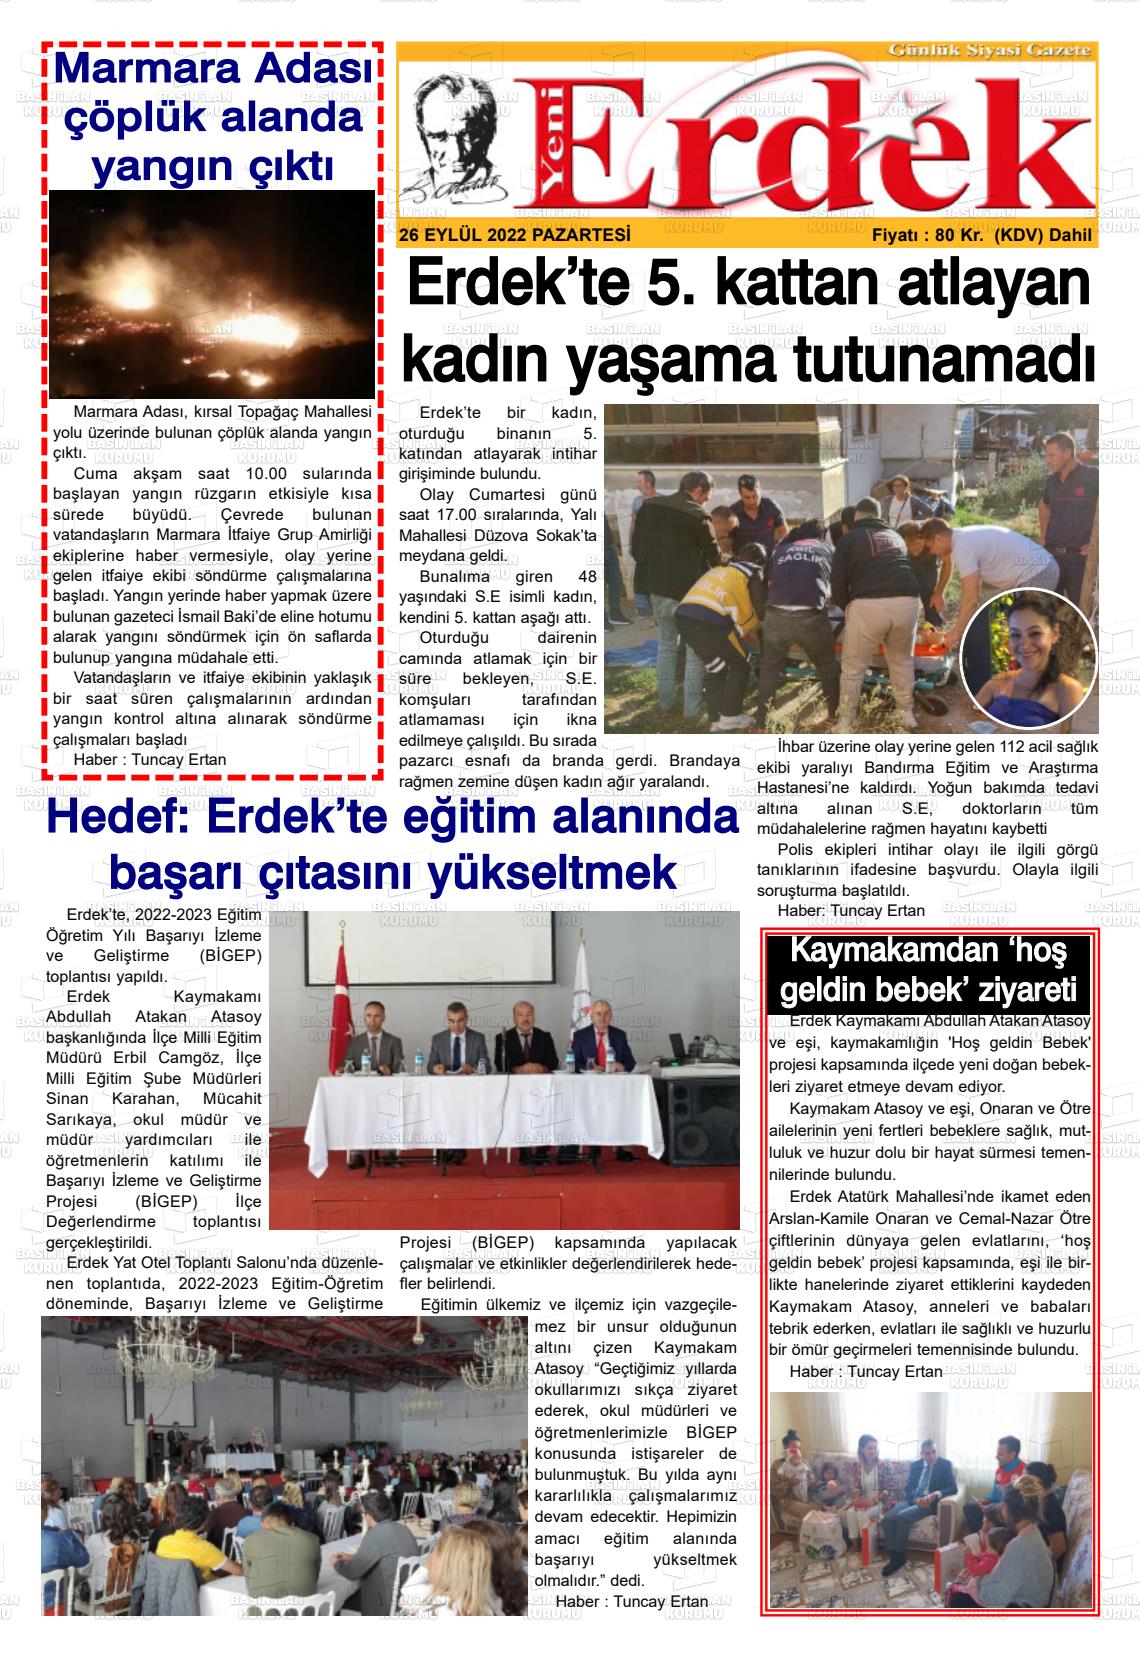 26 Eylül 2022 Yeni Erdek Gazete Manşeti